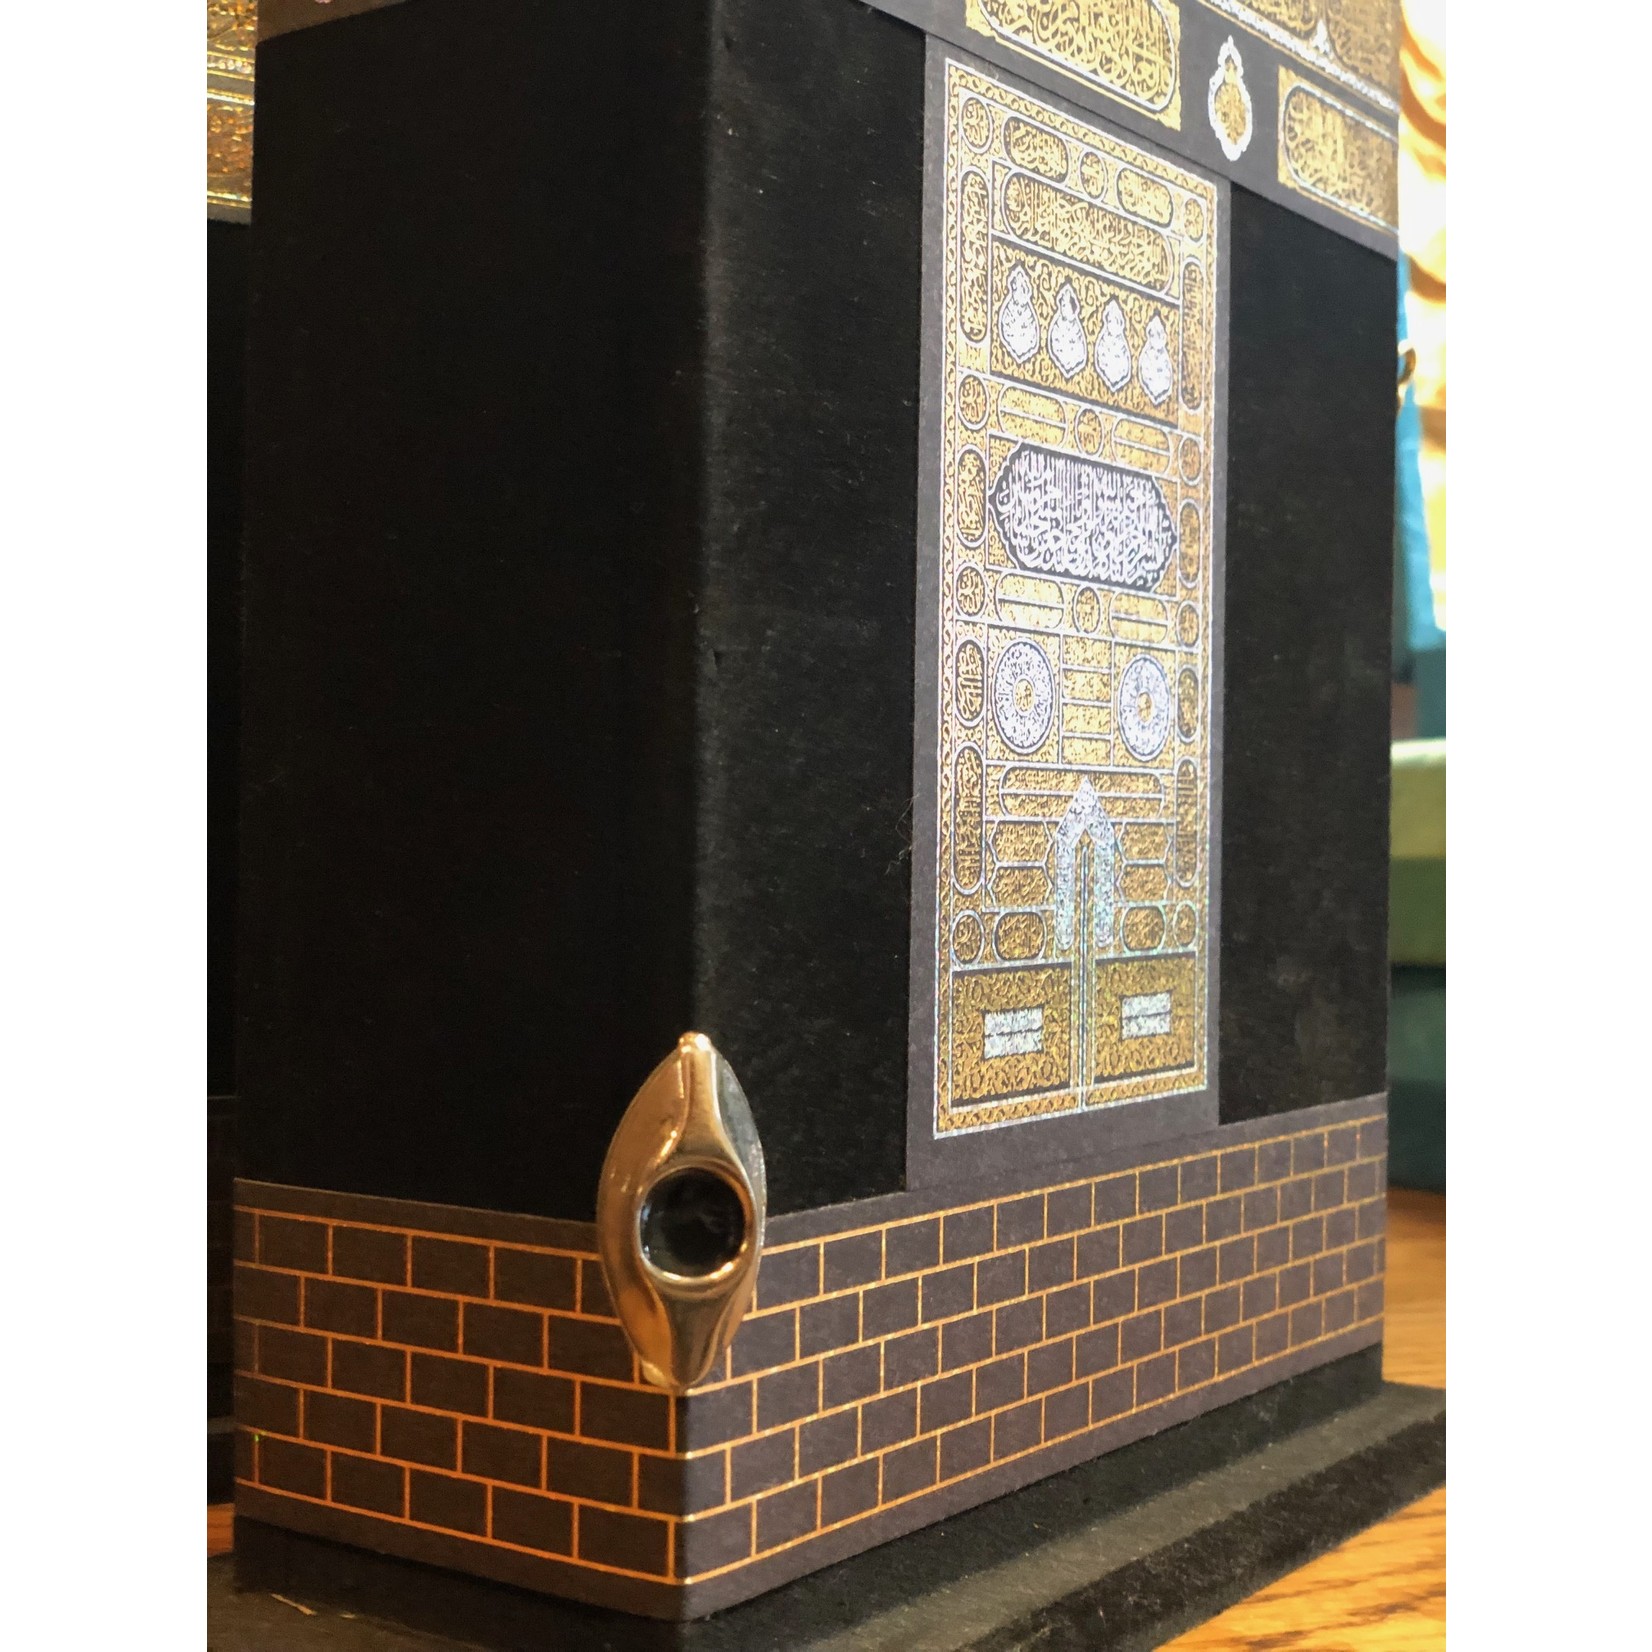 Quran in der Kaaba